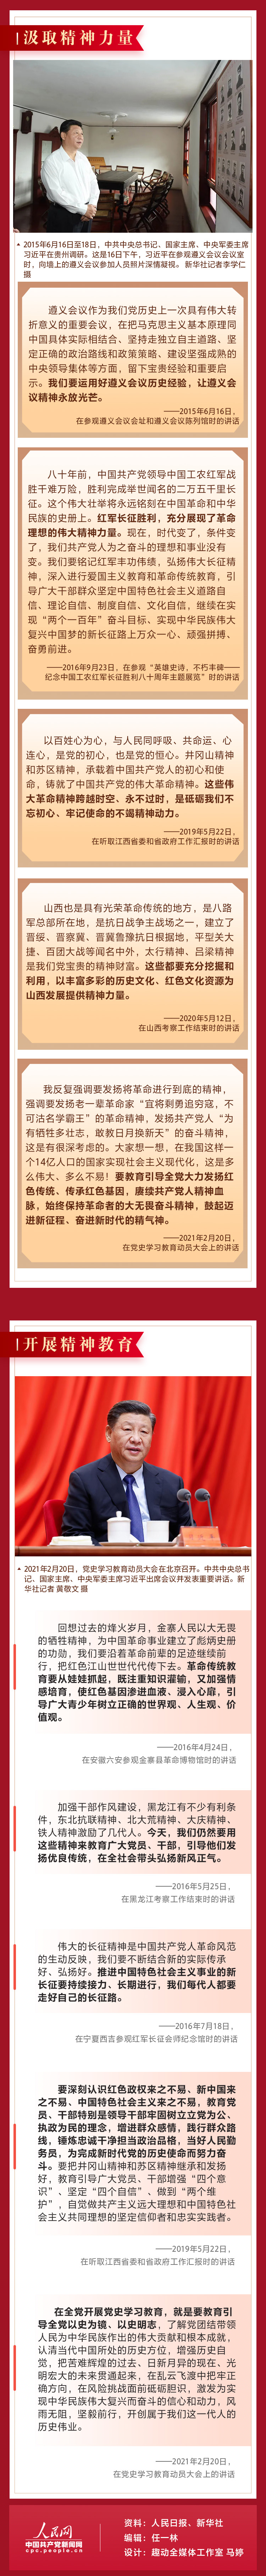 红色足迹篇系列图解之二3 人民网-中国共产党新闻网.jpg